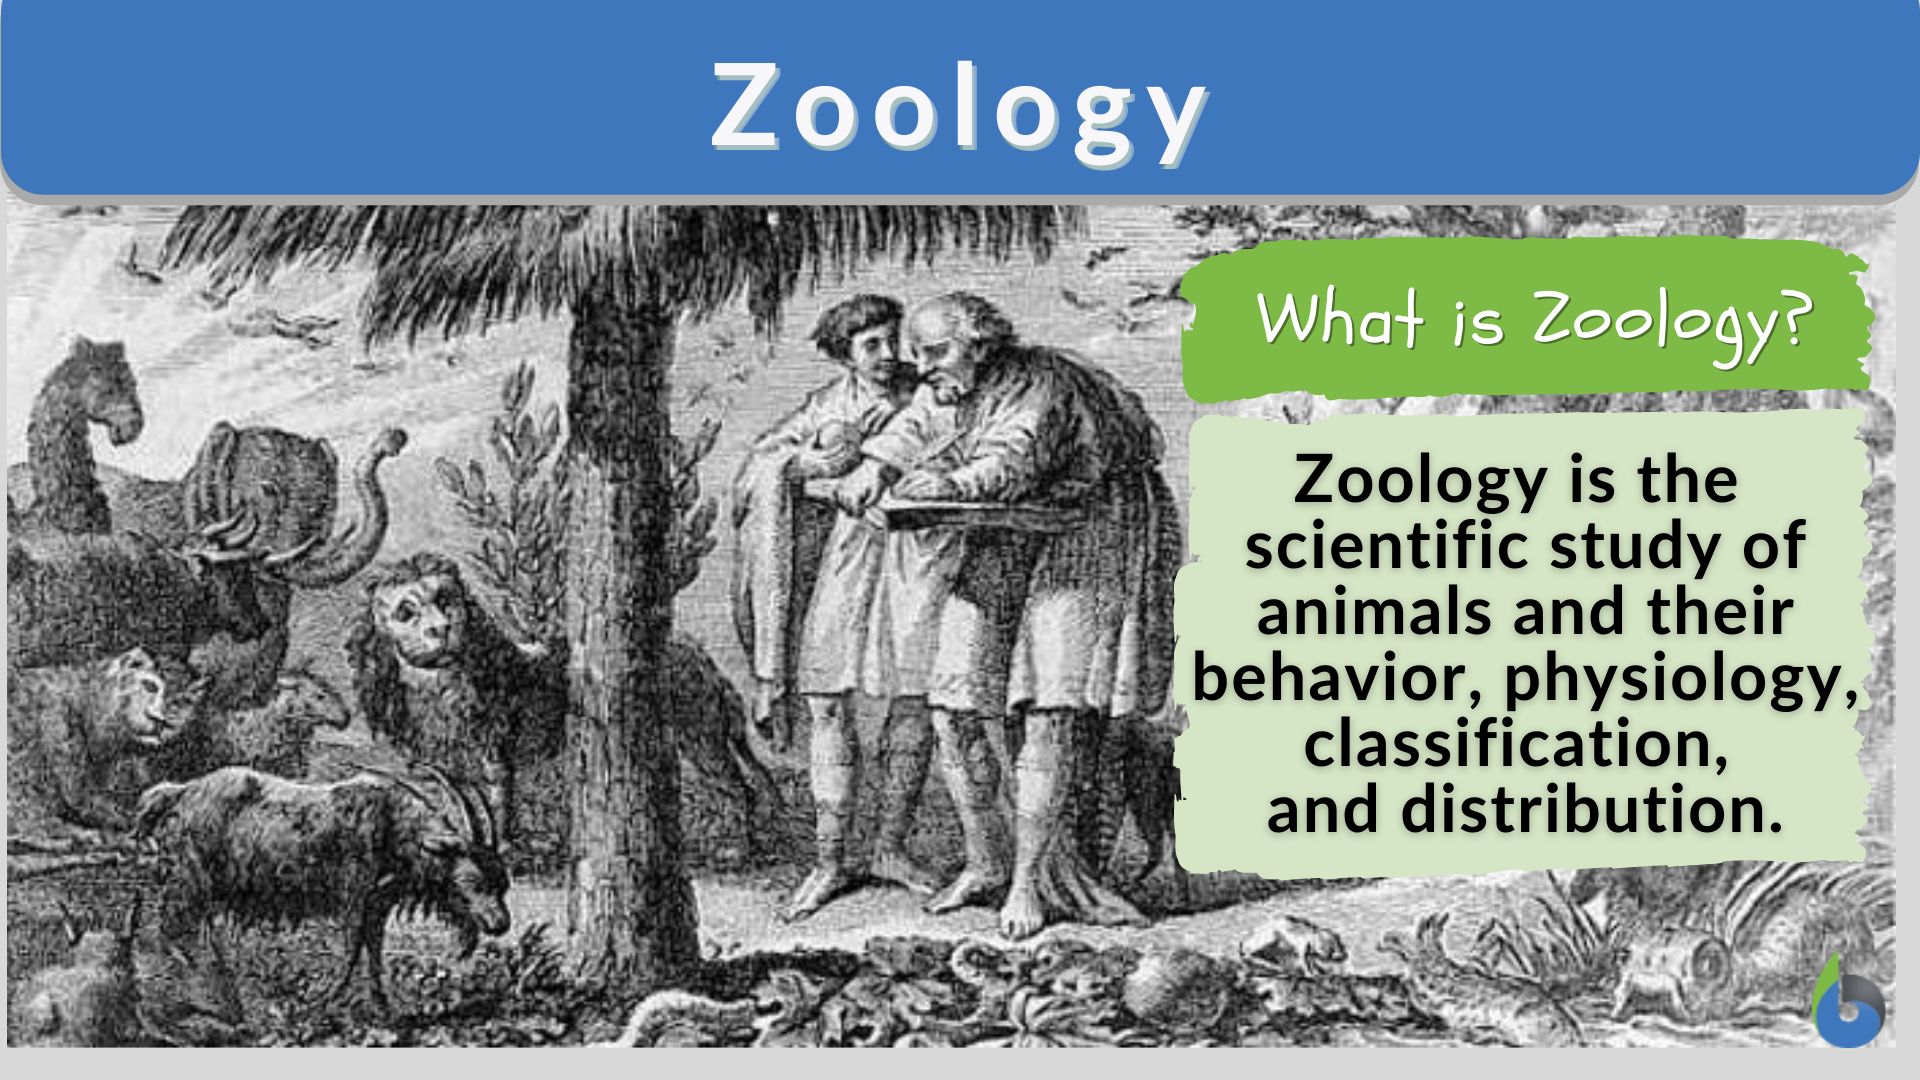 English Nature Vocabulary (Lesson 3): Describe Wild Animals